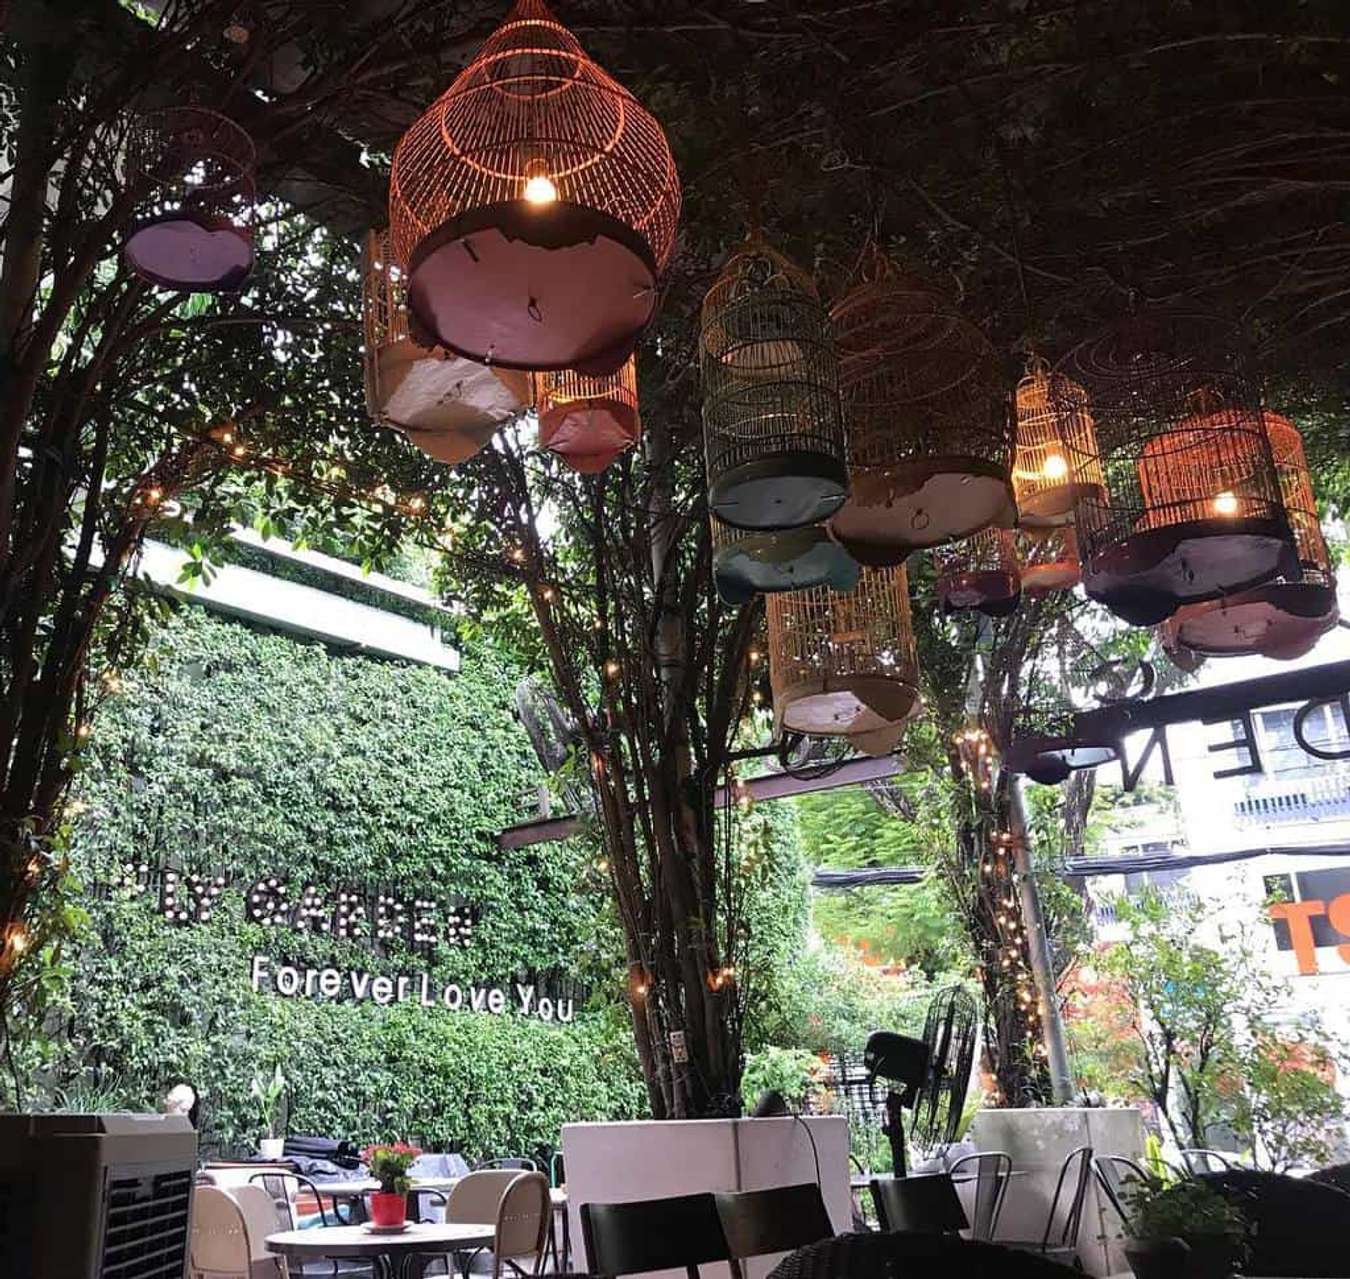 Giữa trung tâm Sài Gòn nhộn nhịp, quán cà phê sân vườn đẹp này trở thành một ngôi nhà thứ hai cho những người yêu cà phê và xanh mát. Không gian yên tĩnh và hạnh phúc với cây xanh và hoa tươi, quán là nơi tuyệt vời để bạn được thư giãn và quên đi cái xô bồ của cuộc sống.